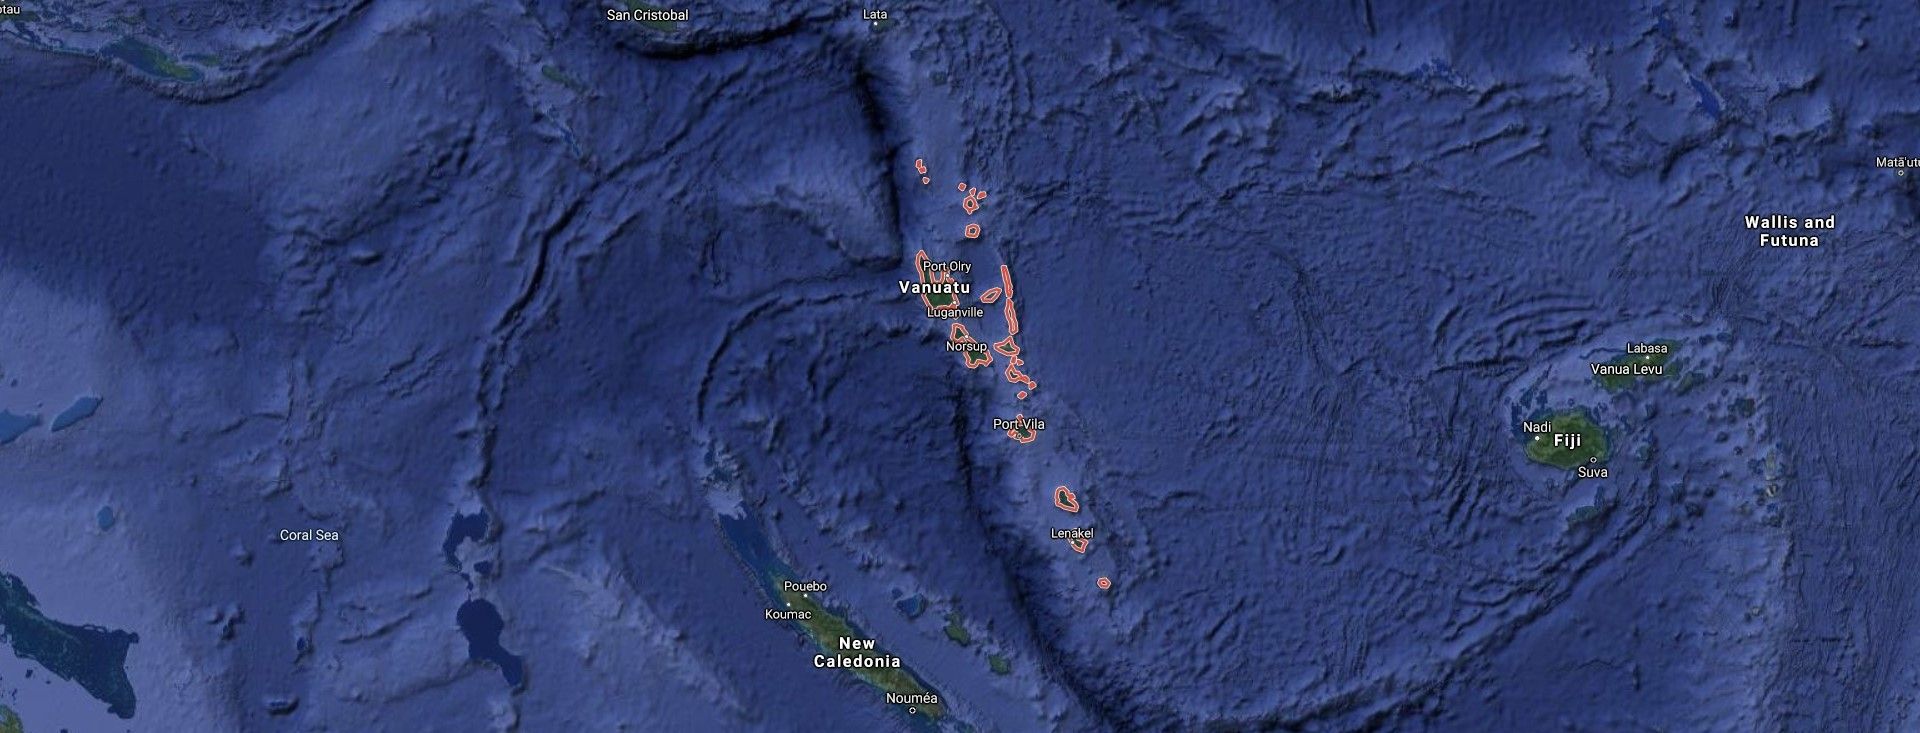 Body of Filipino fisherman washes ashore in Vanuatu, tests positive for coronavirus